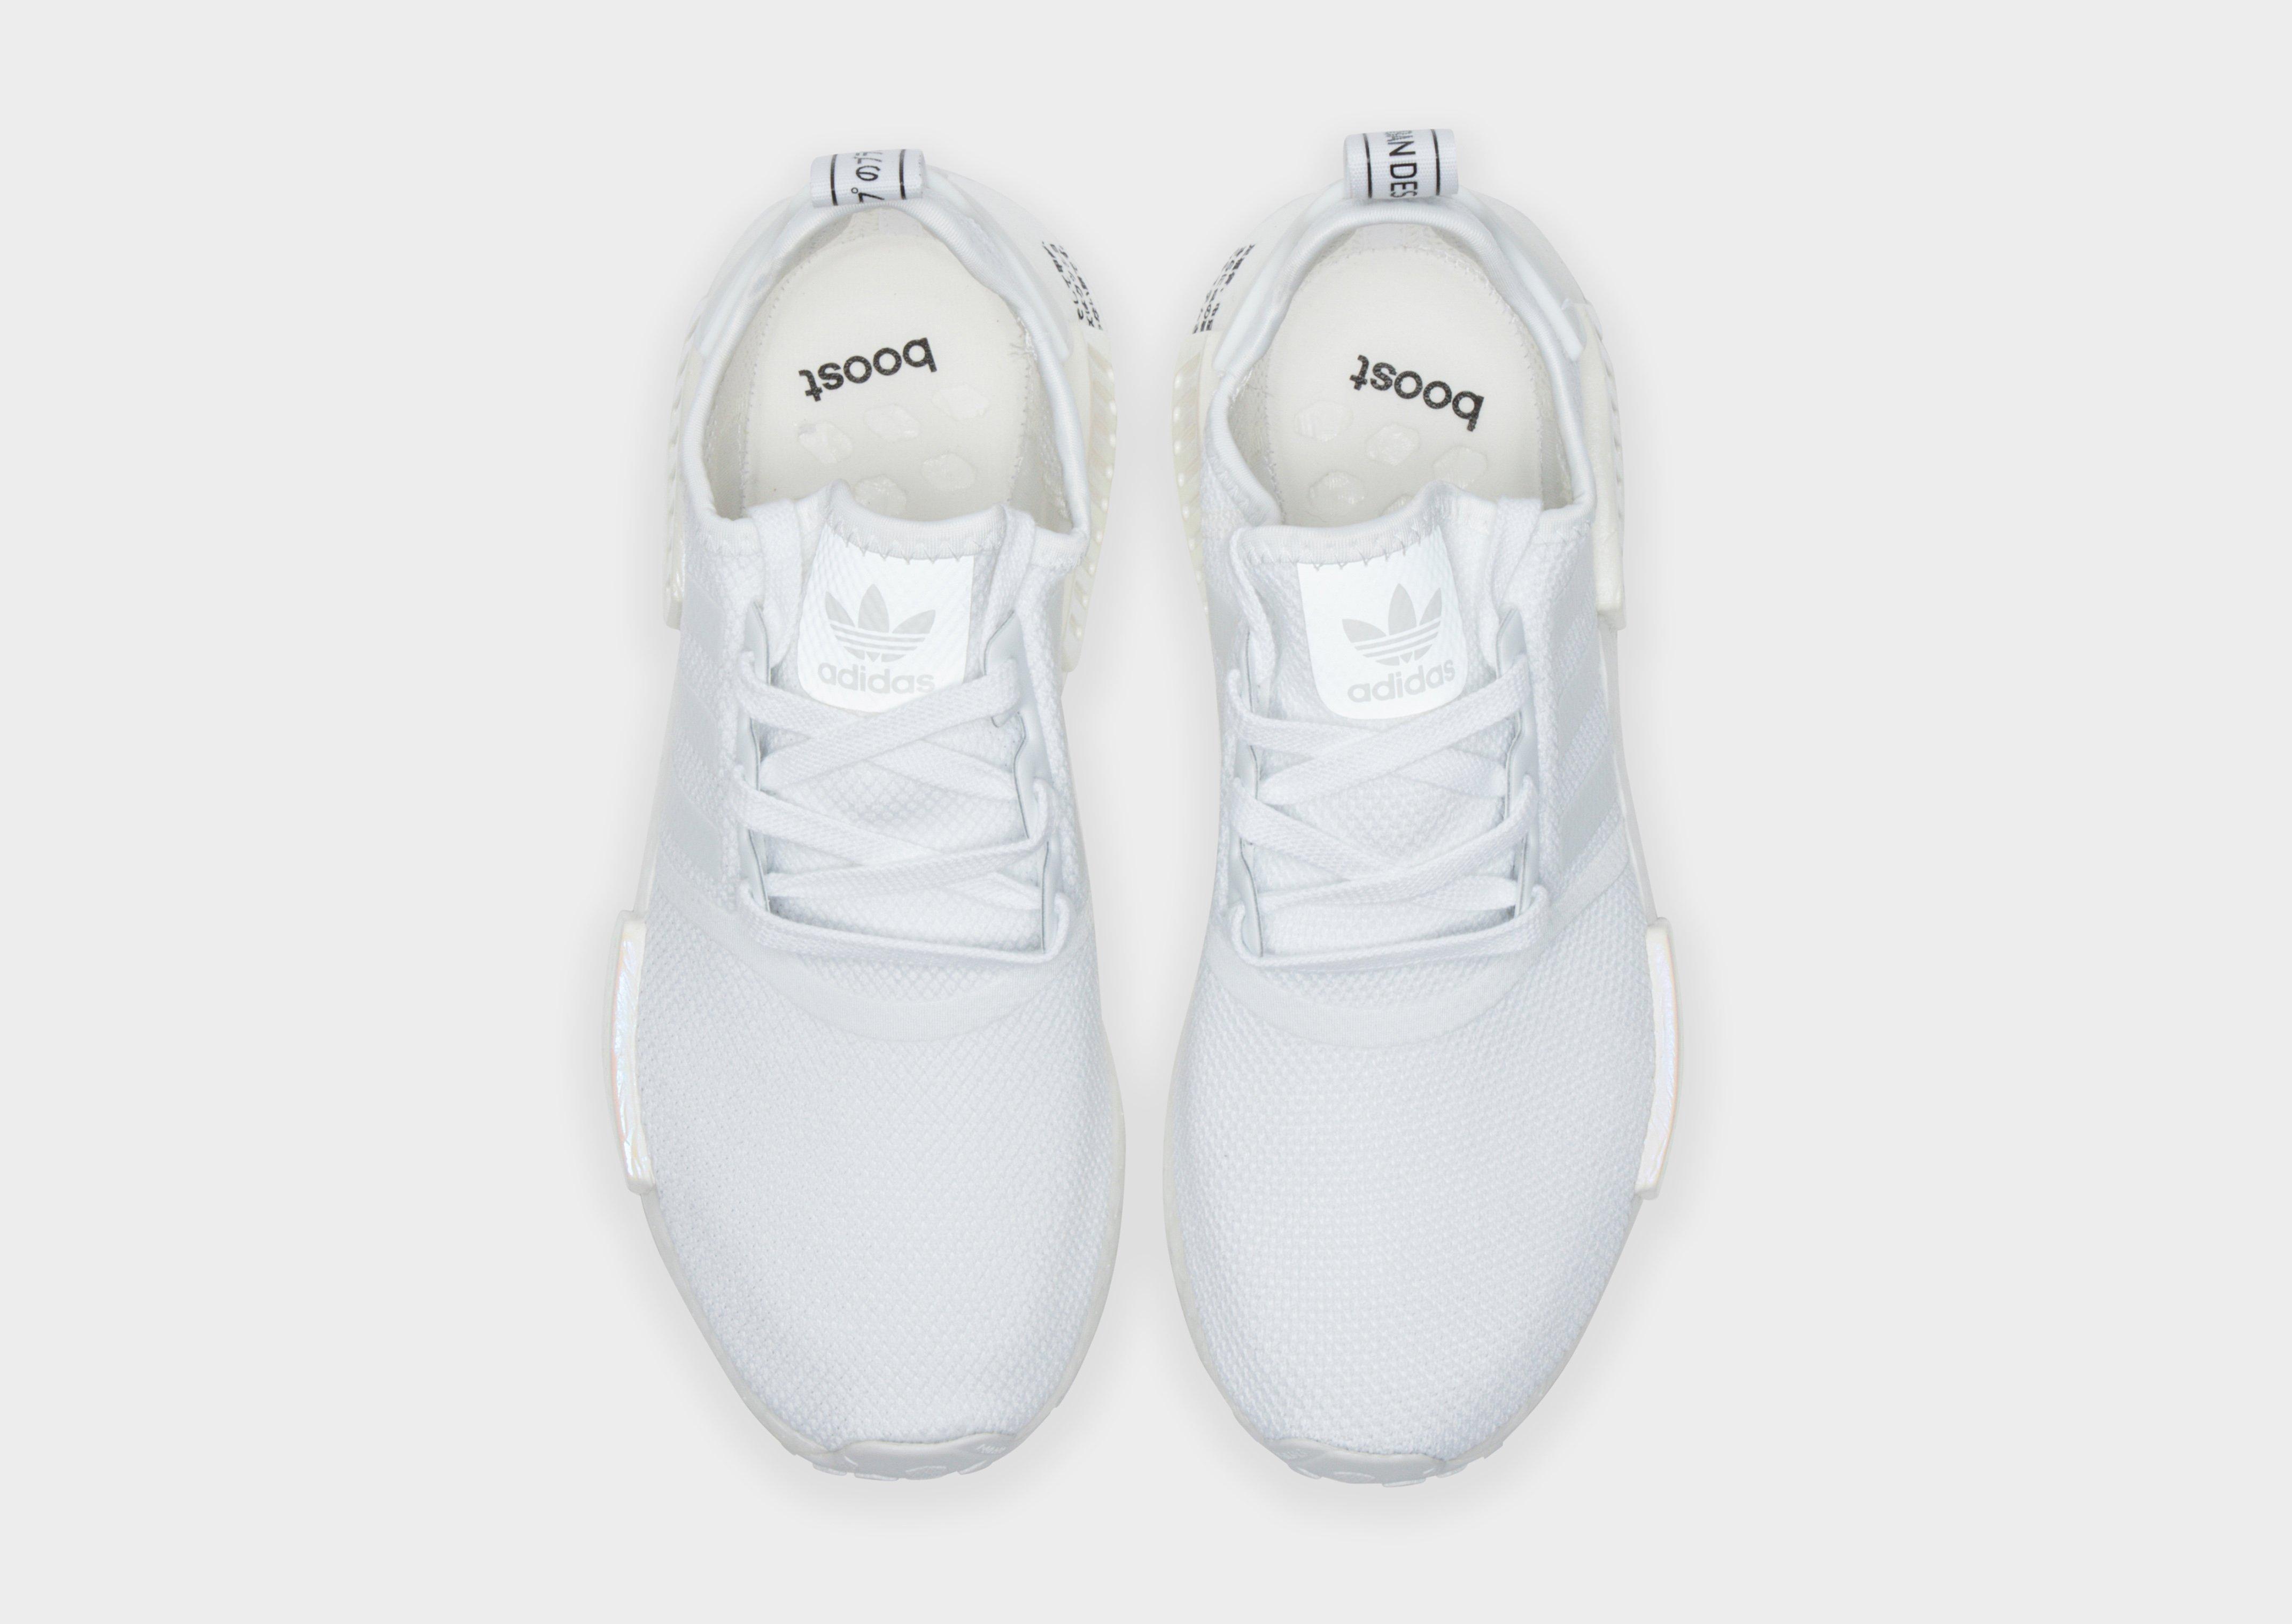 Nedsænkning lungebetændelse Uskyld adidas Originals Nmd R1 Iridescent Japan in White - Lyst